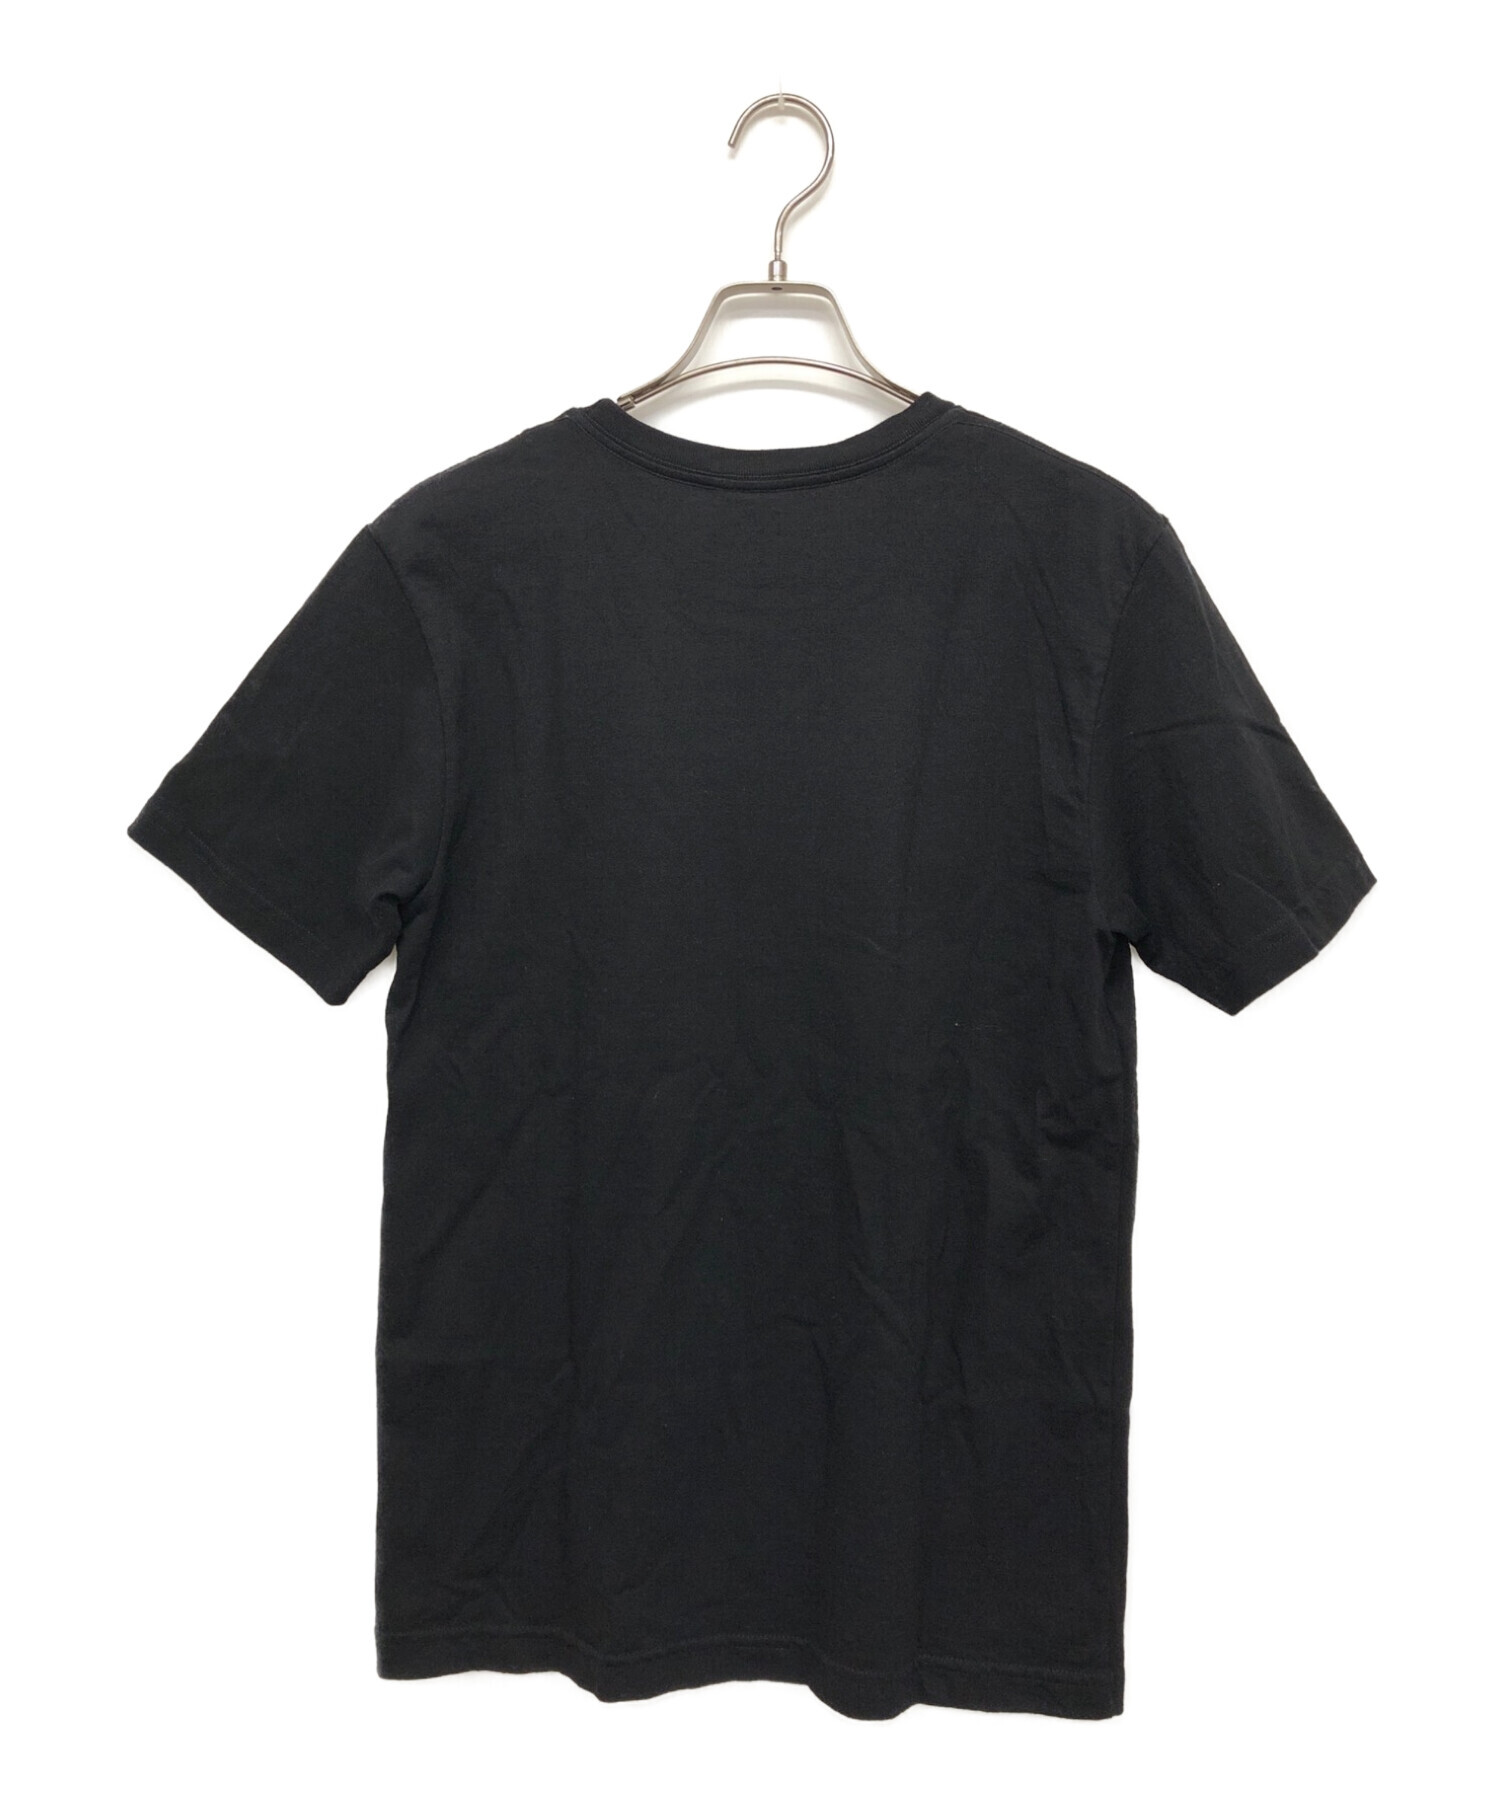 A.P.C. (アー・ペー・セー) ダイナーTシャツ ブラック サイズ:S